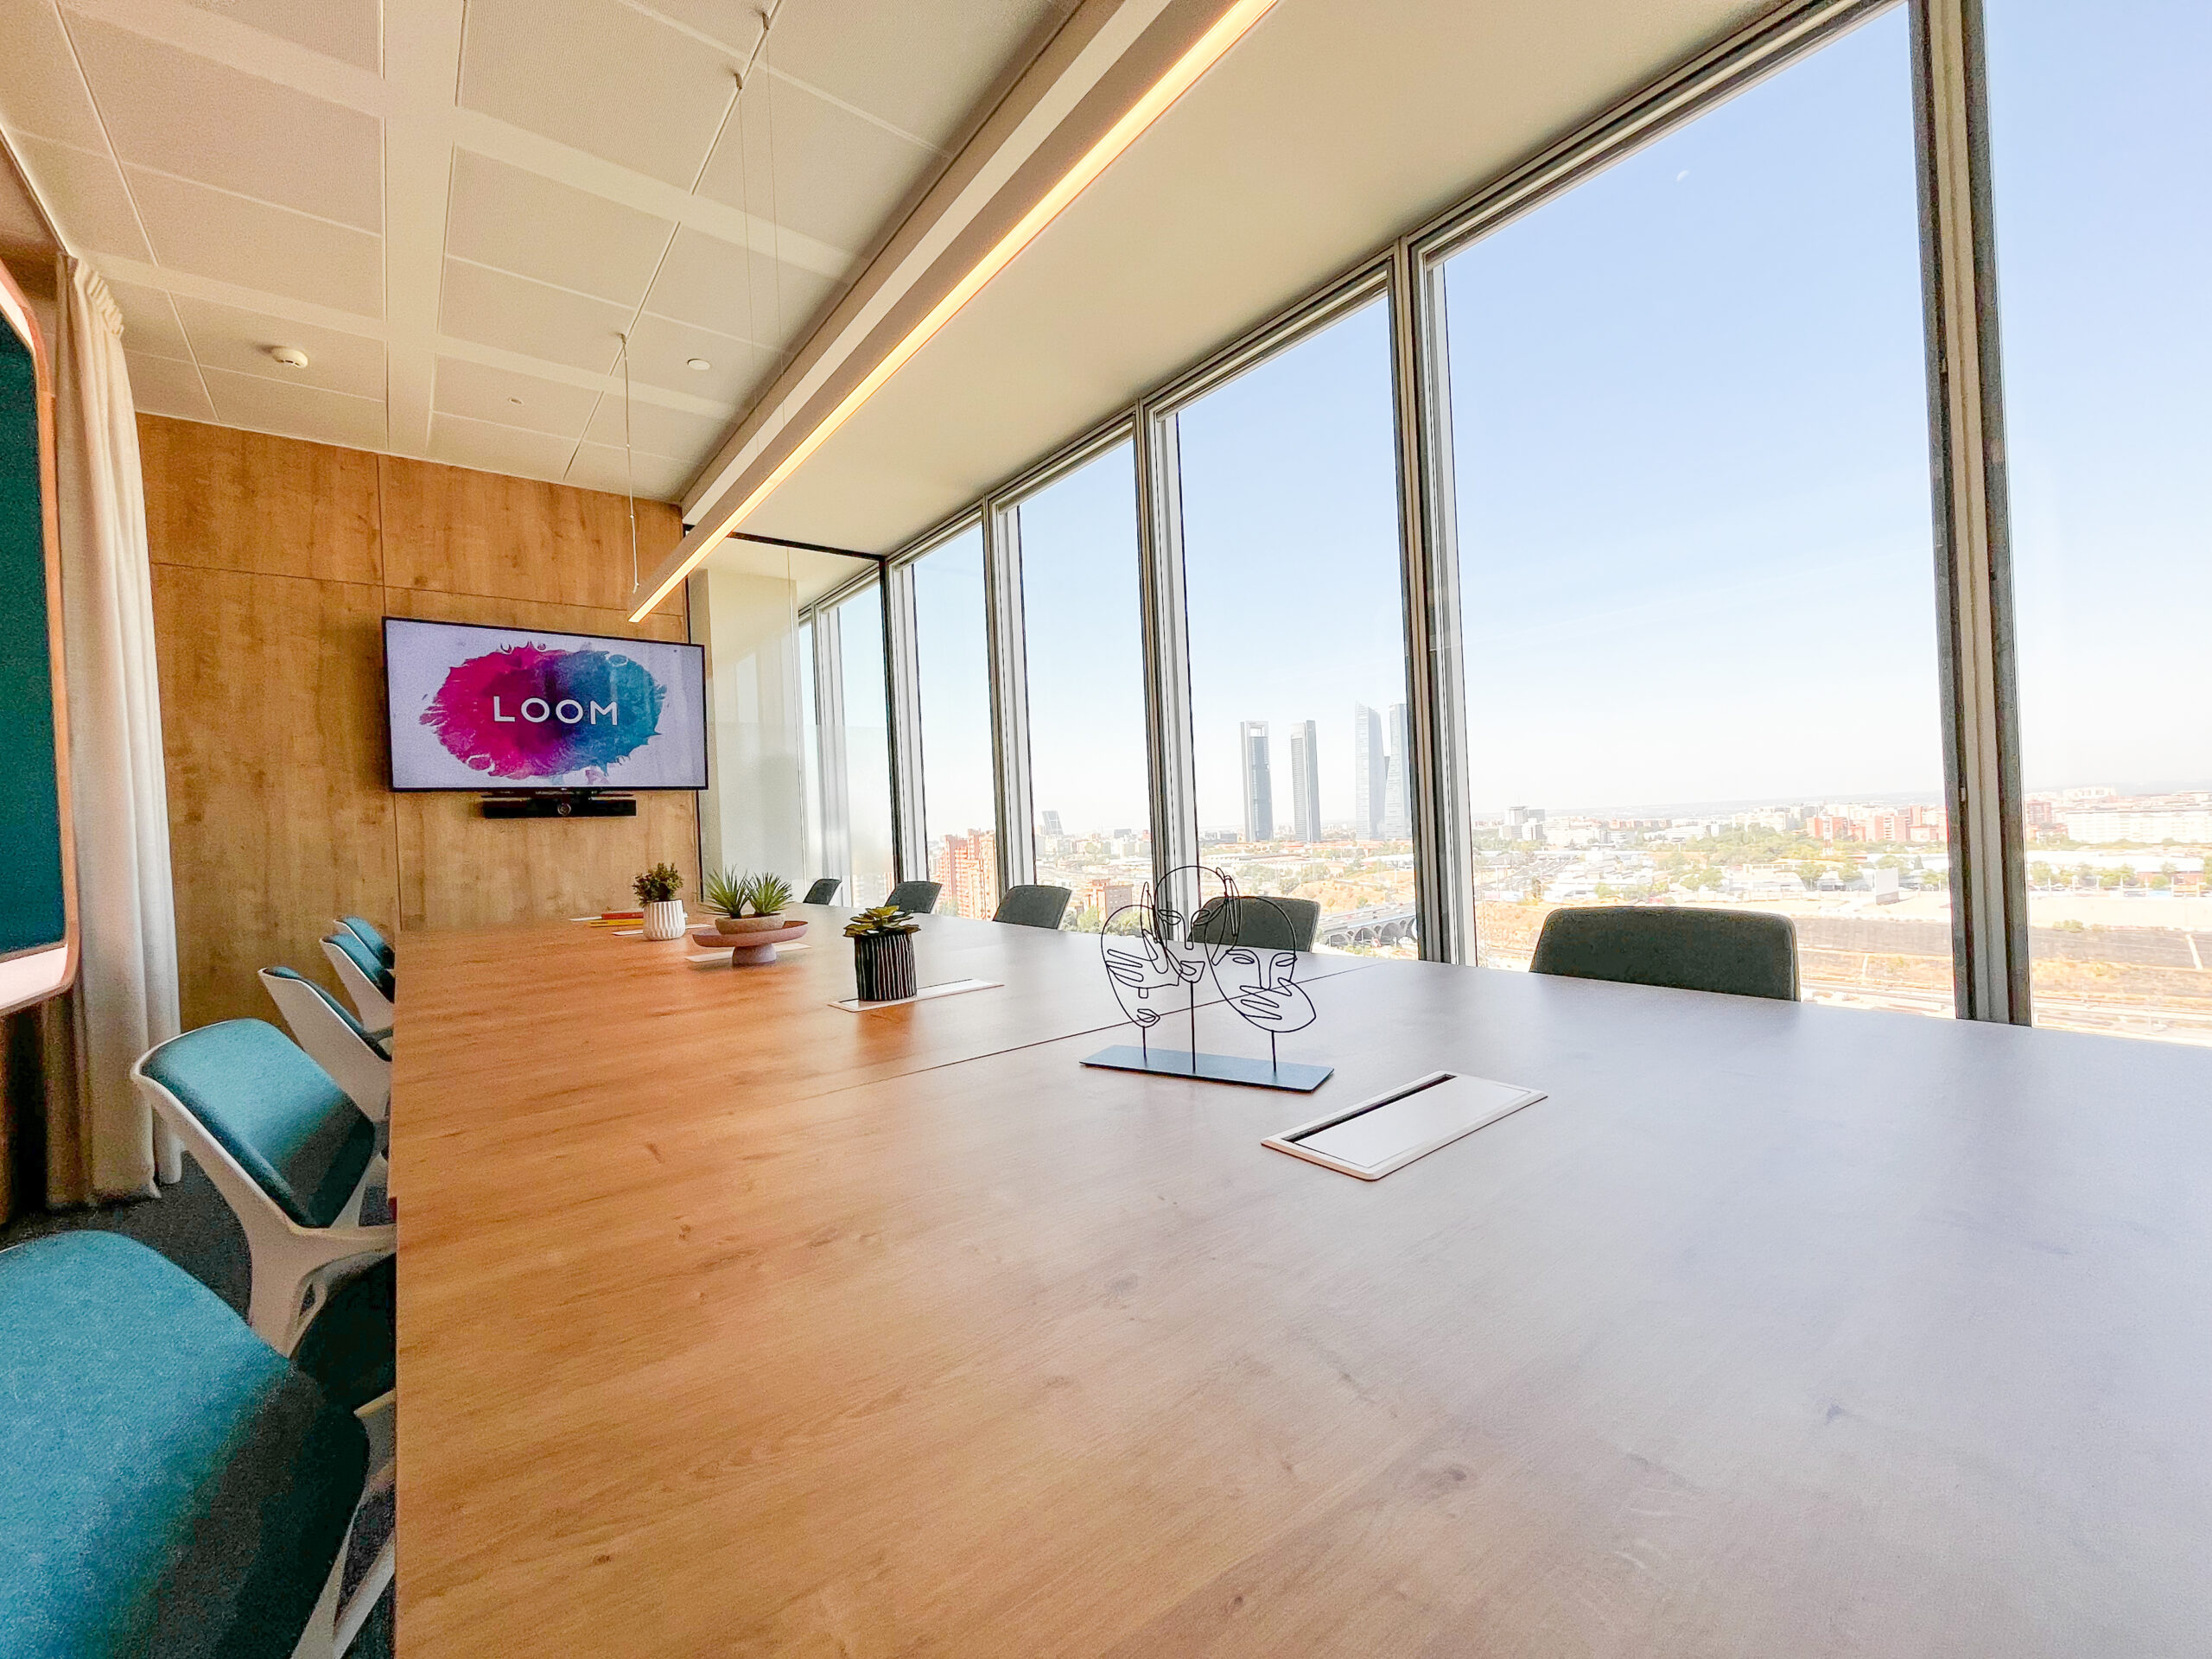 la sala de reuniones Terral es una de las salas de reuniones con las mejores vistas de Madrid